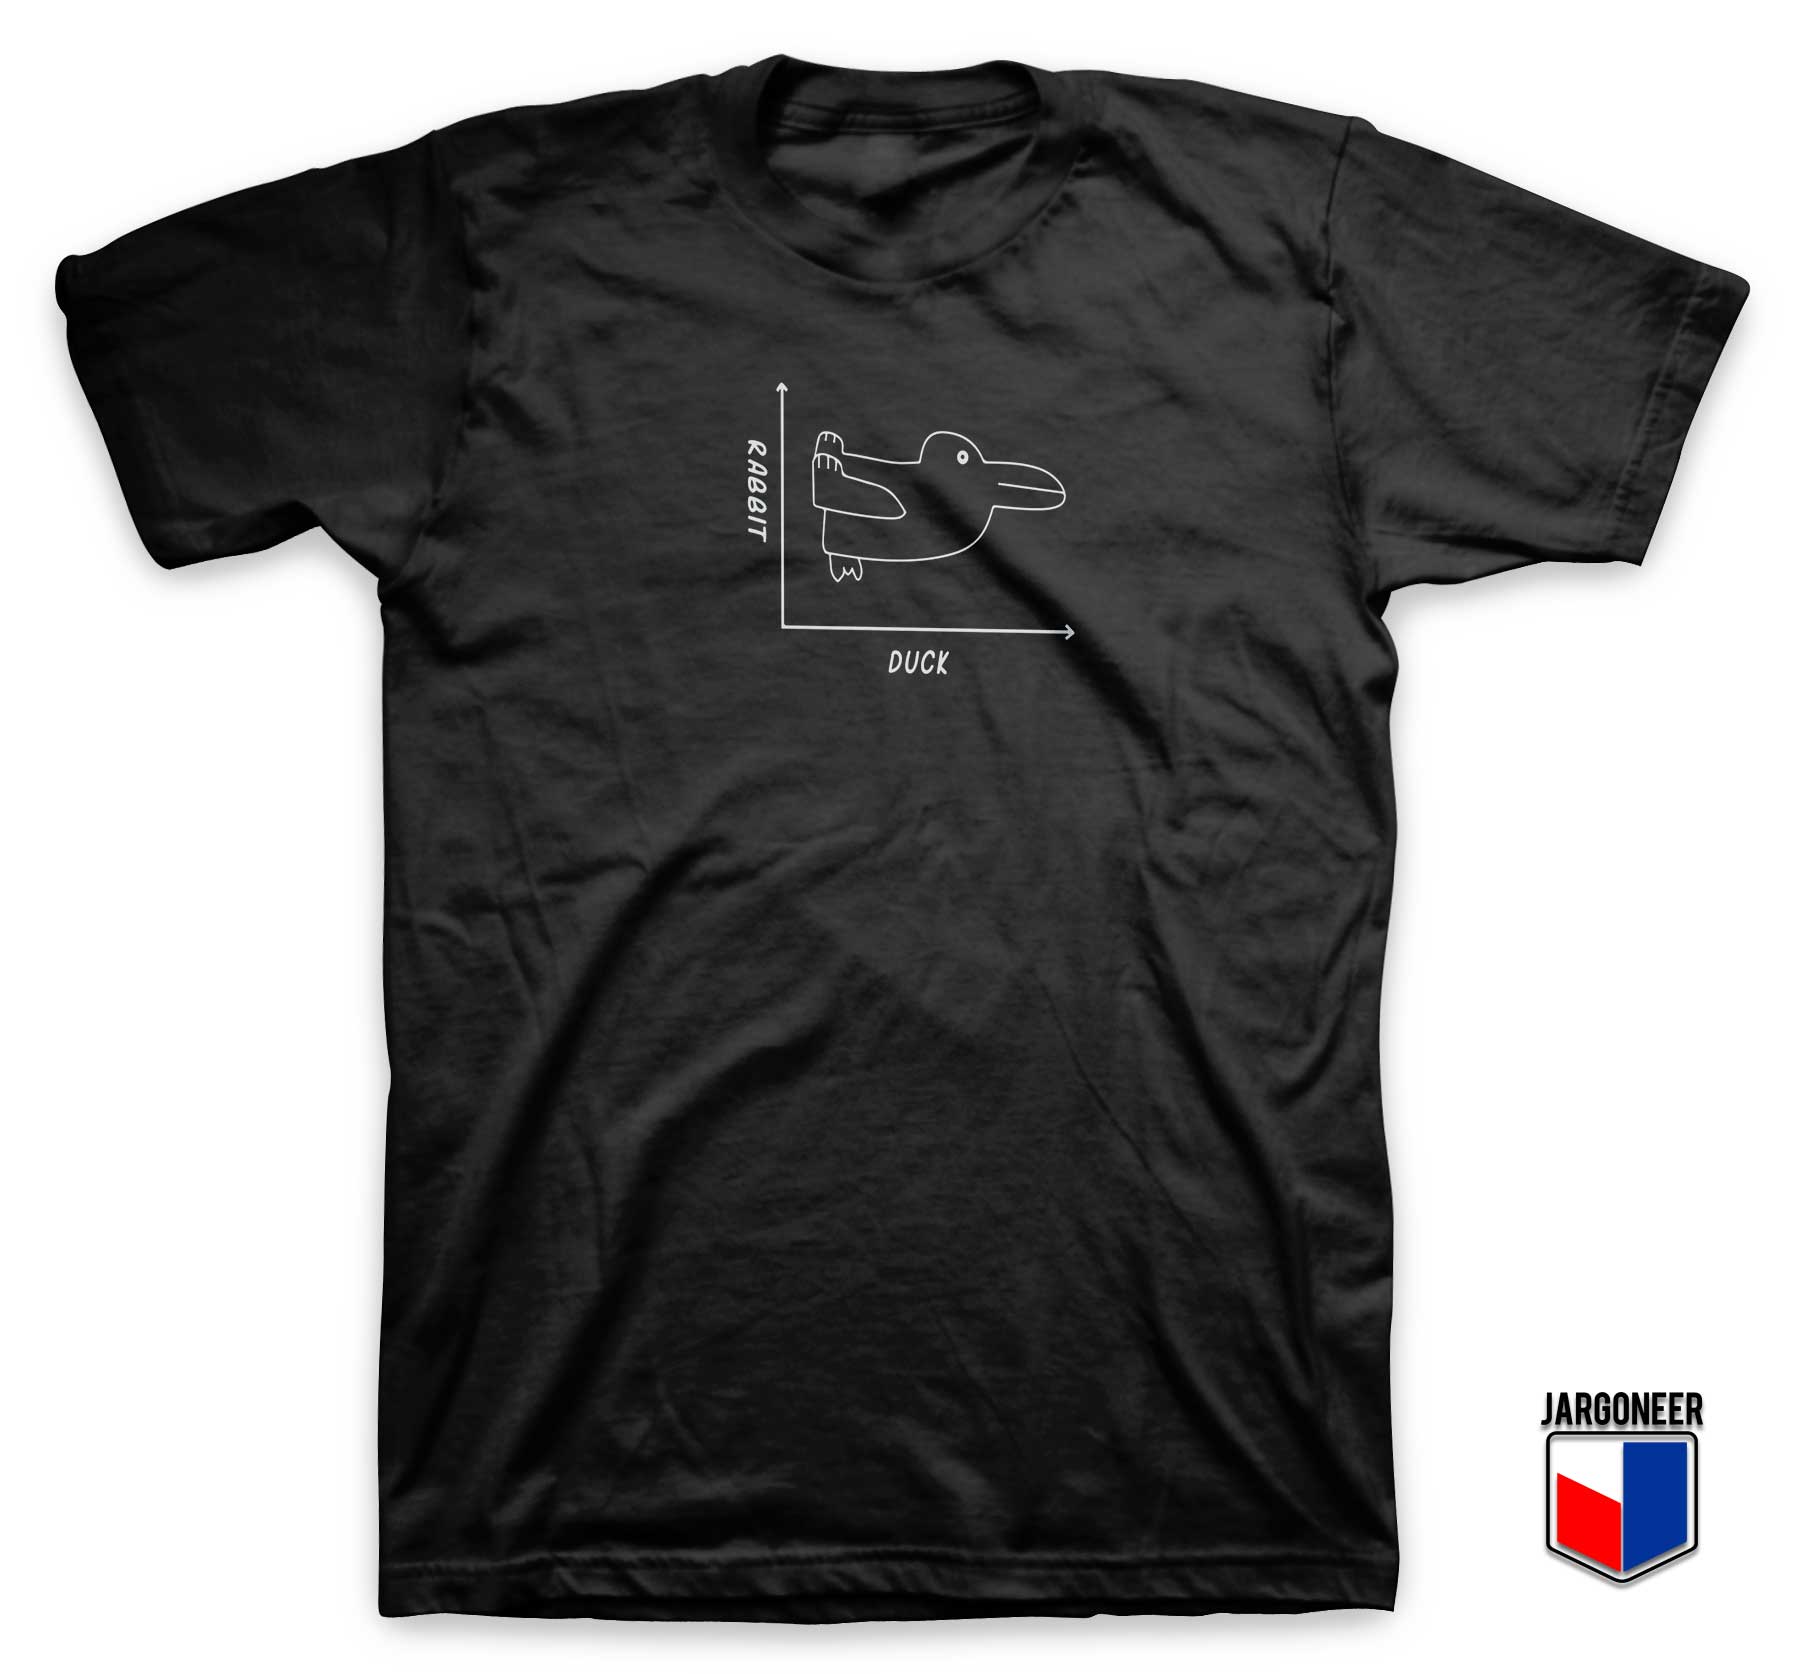 Duck Rabbit T Shirt - Shop Unique Graphic Cool Shirt Designs